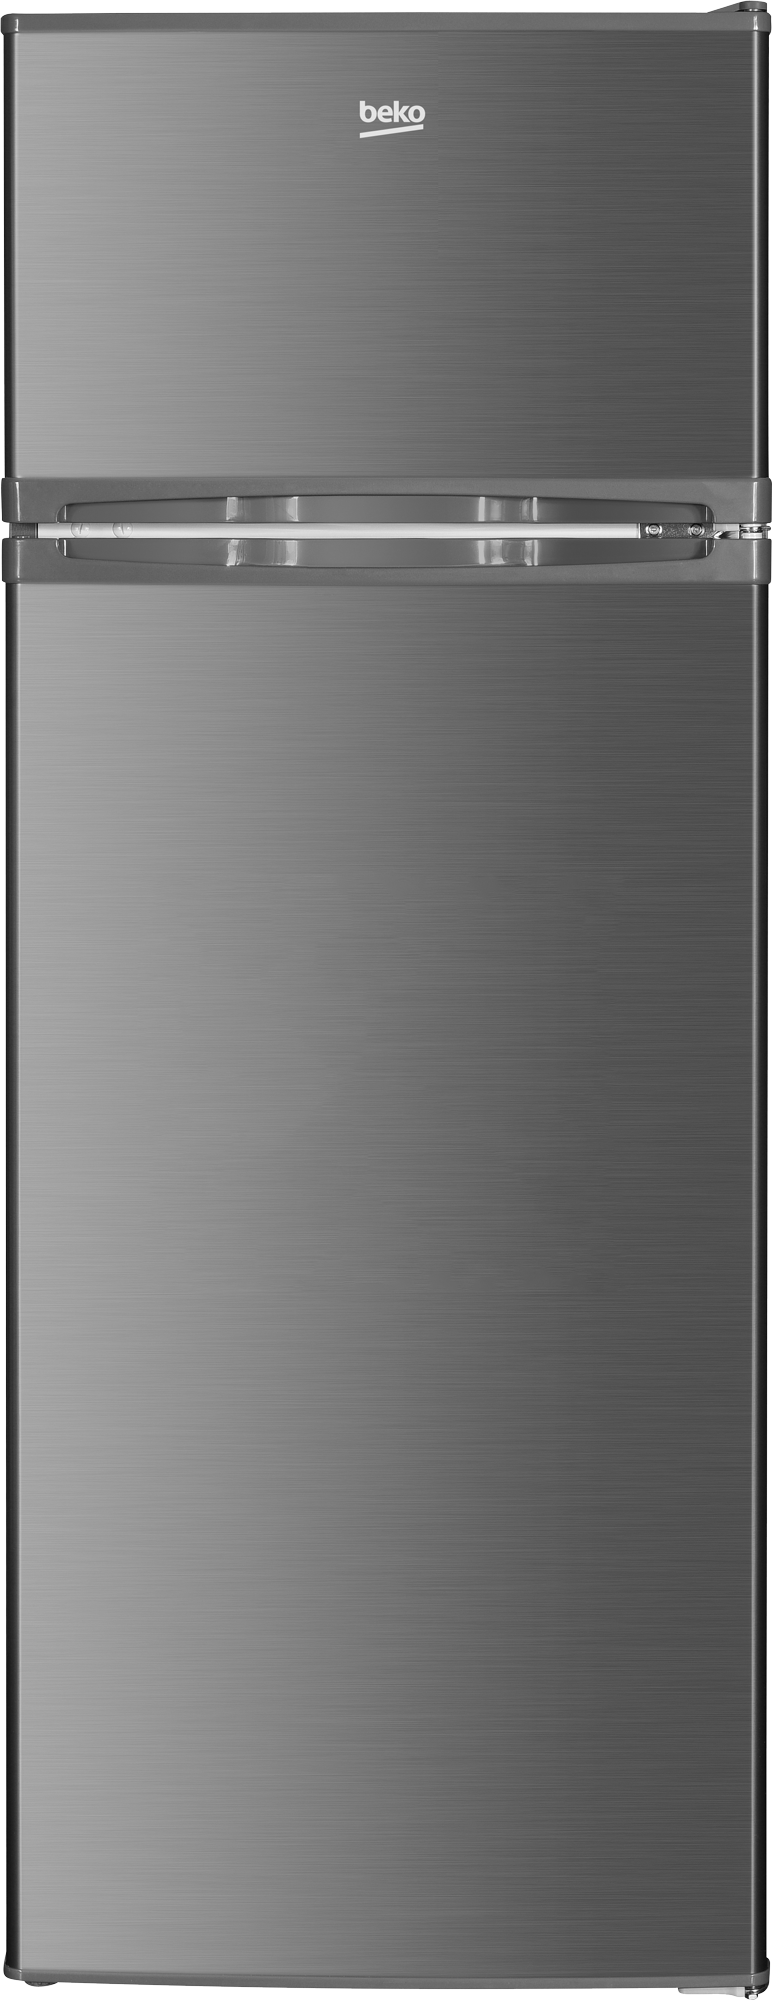 Beko  BAD285 UK 212 Litres Top Freezer Refrigerator